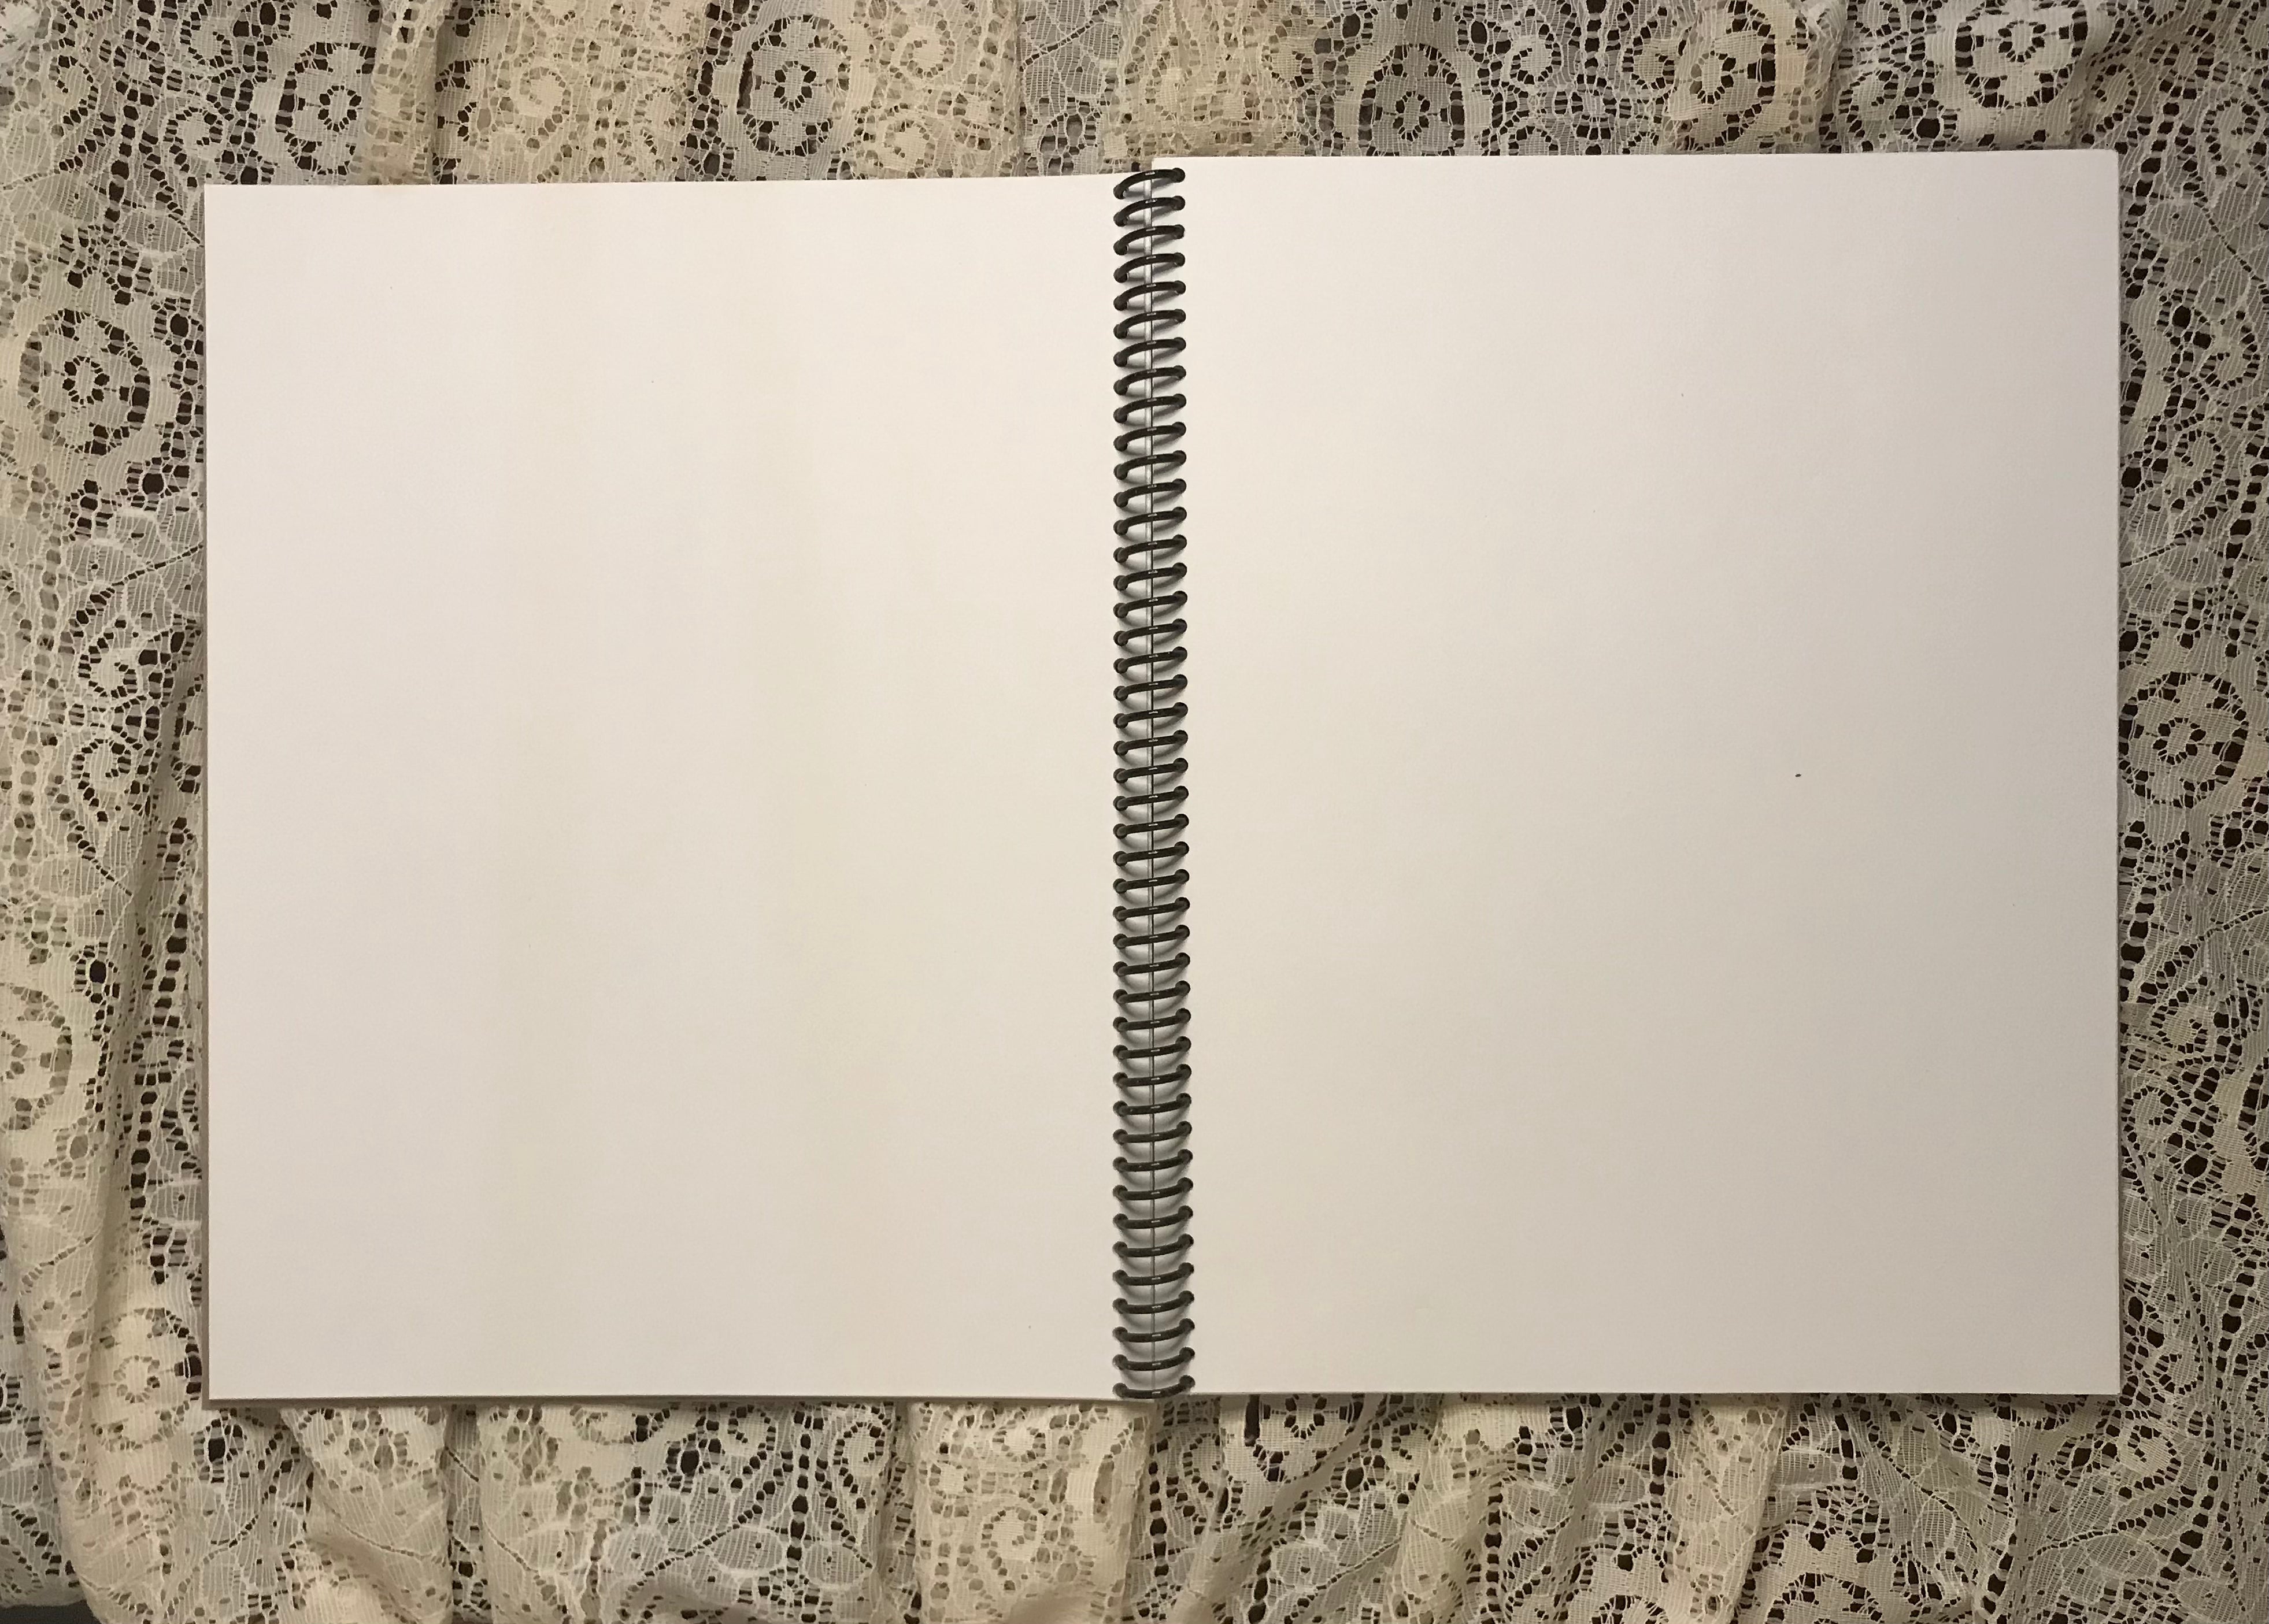 David Allan Coe Album Cover Notebook